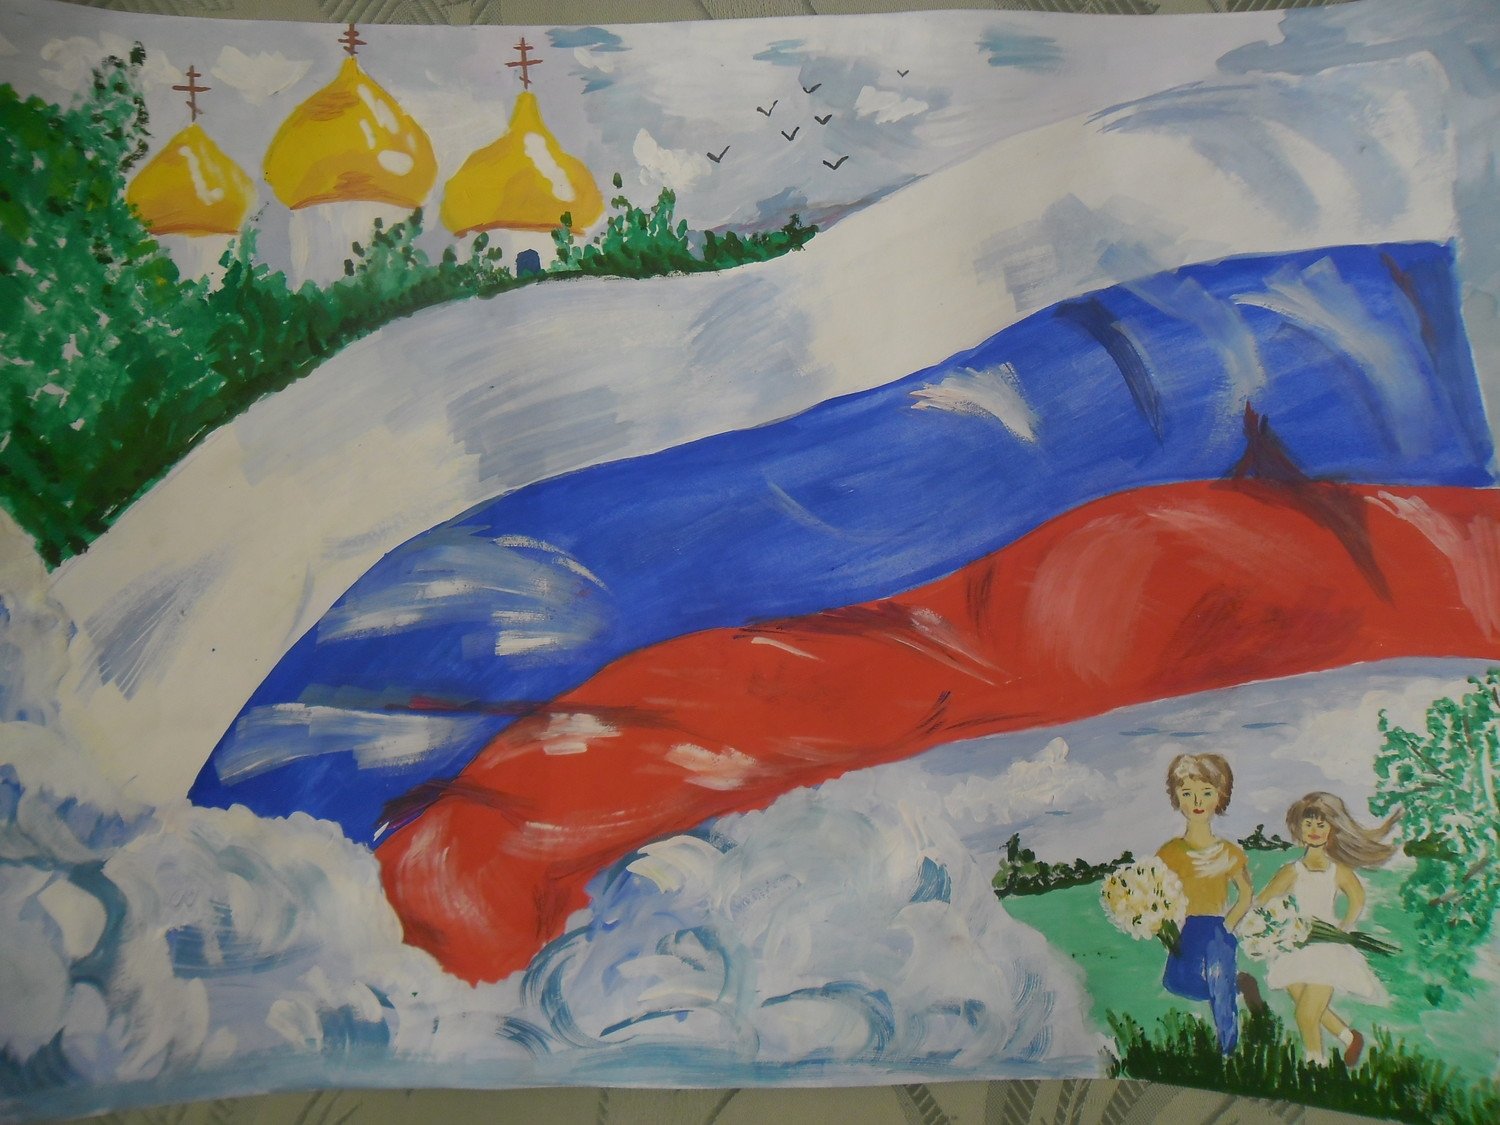 картинки моя россия для детского сада